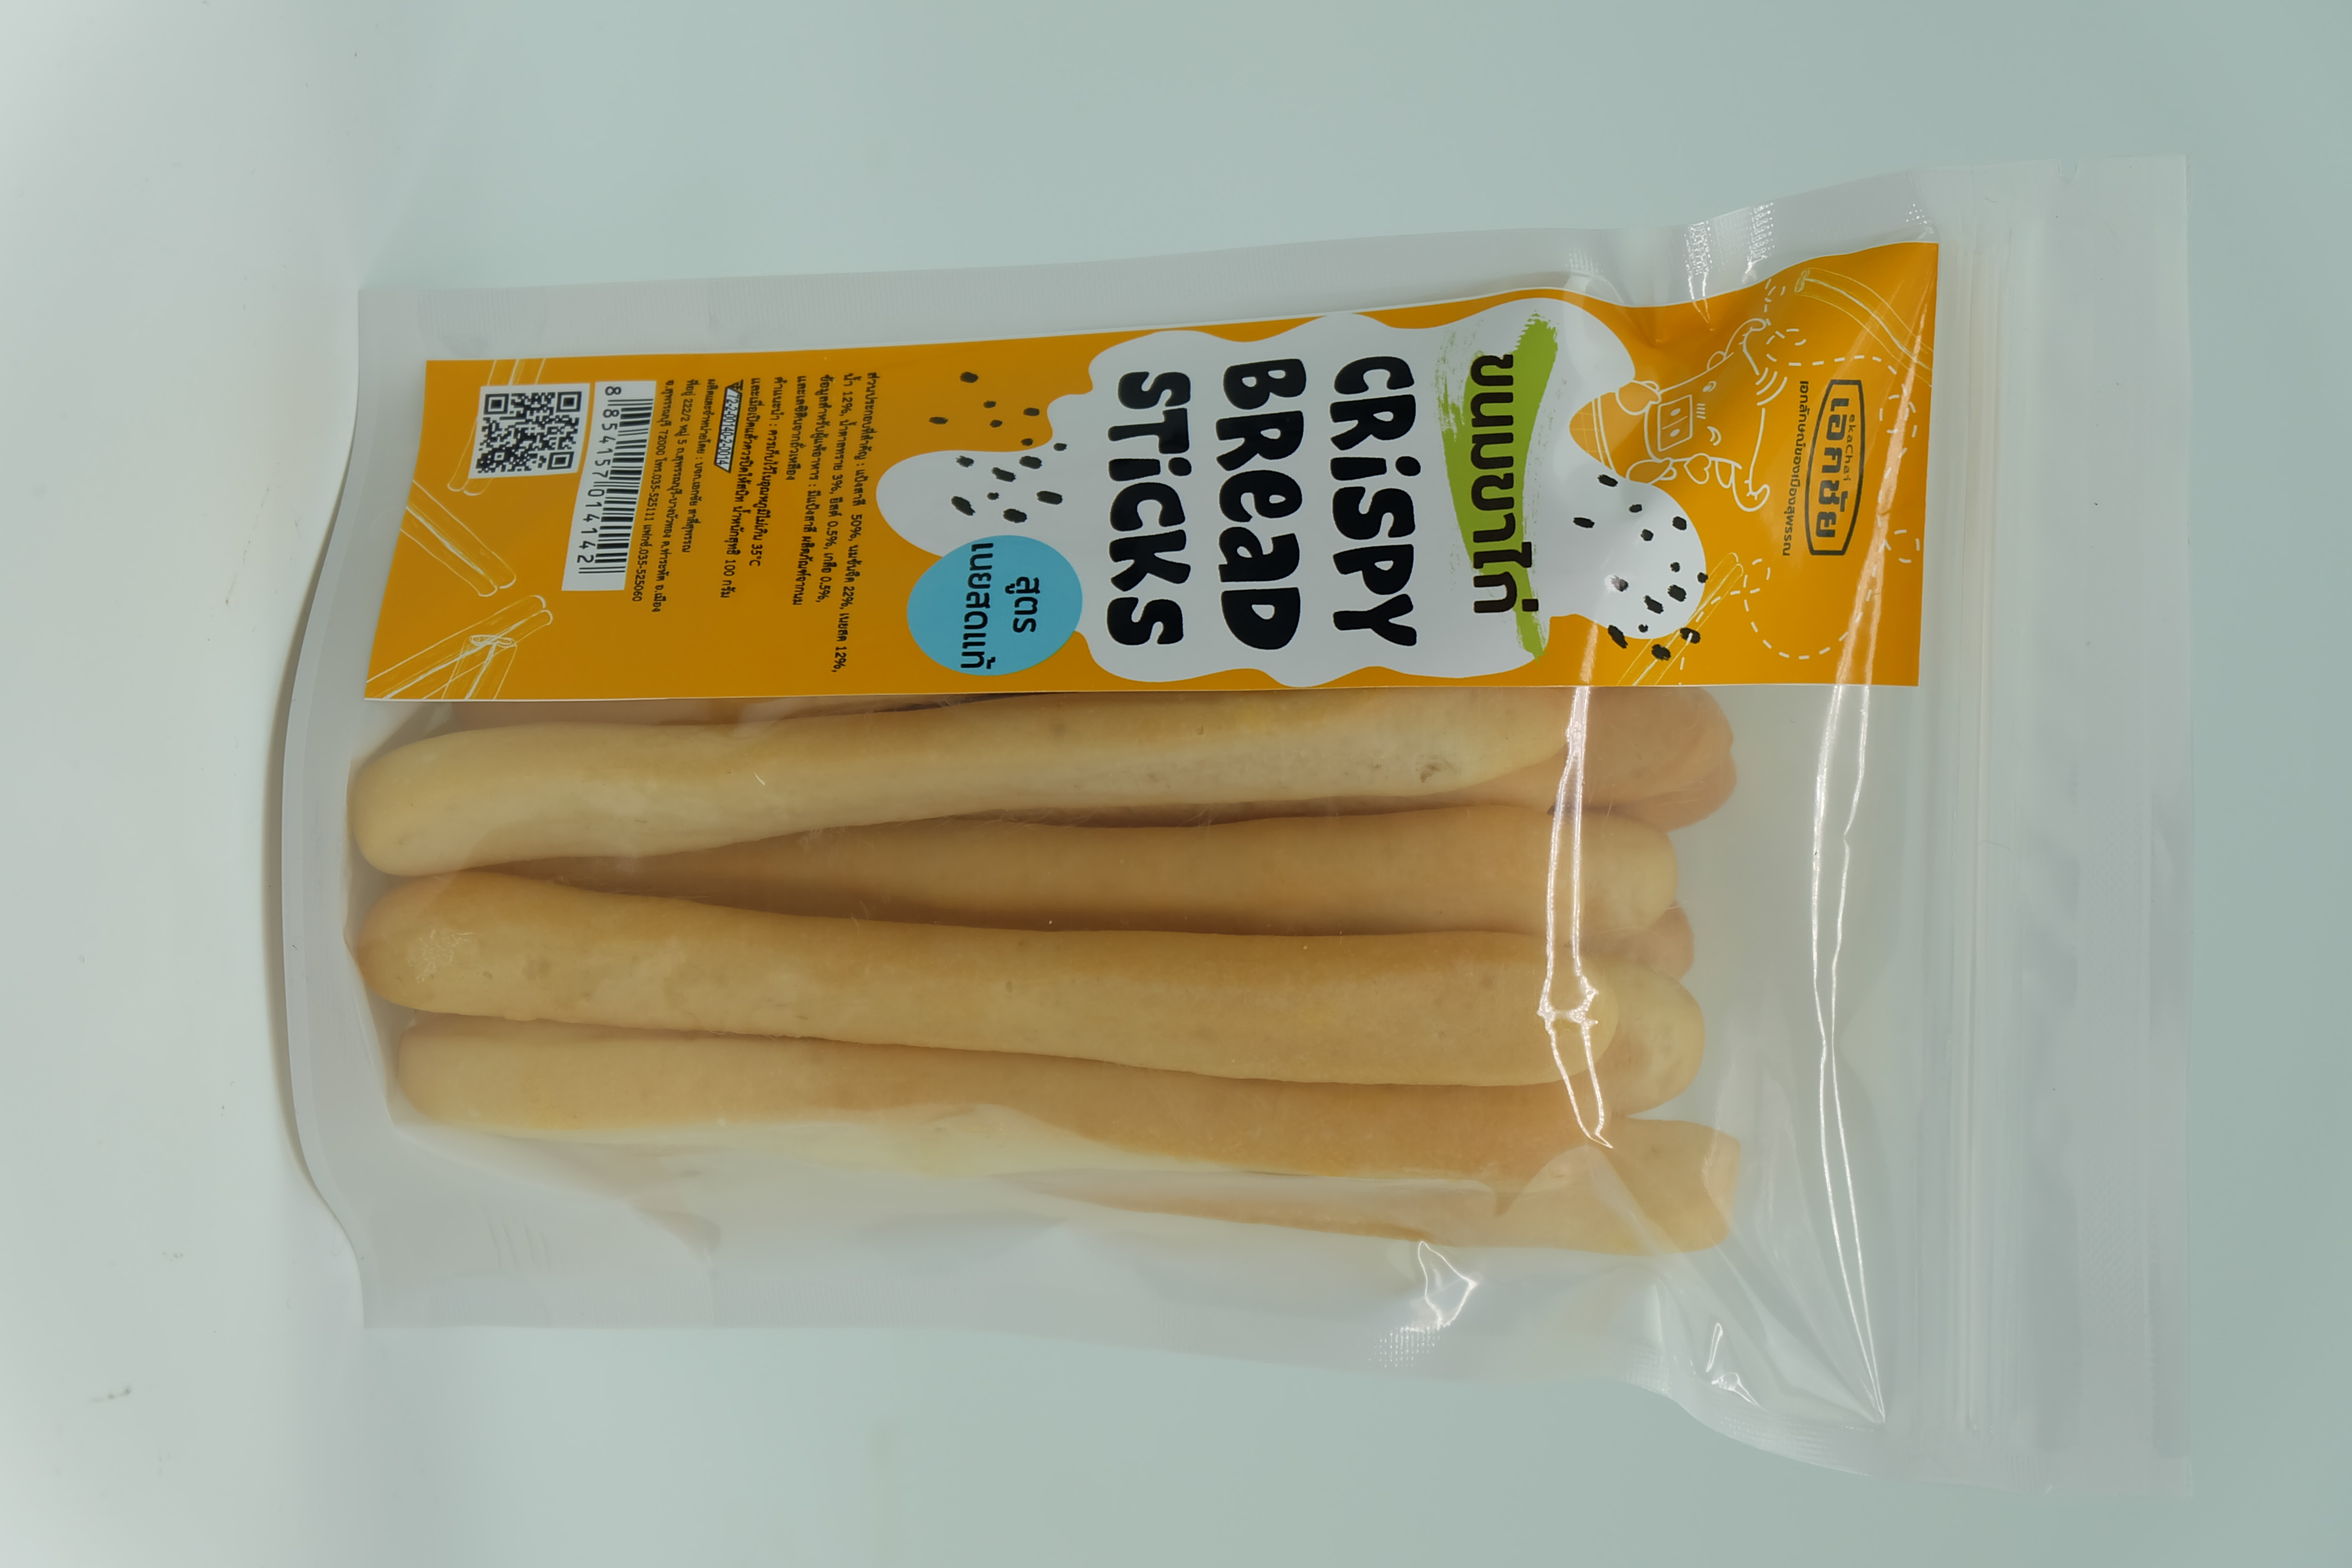 สินค้าหมด ขนมขาไก่ สูตรเนยสดแท้ Crispy Bread Sticks 1 ซอง เอกชัยสาลี่สุพรรณ Ekachai Saleesuphan ขนม OTOP ของกิน